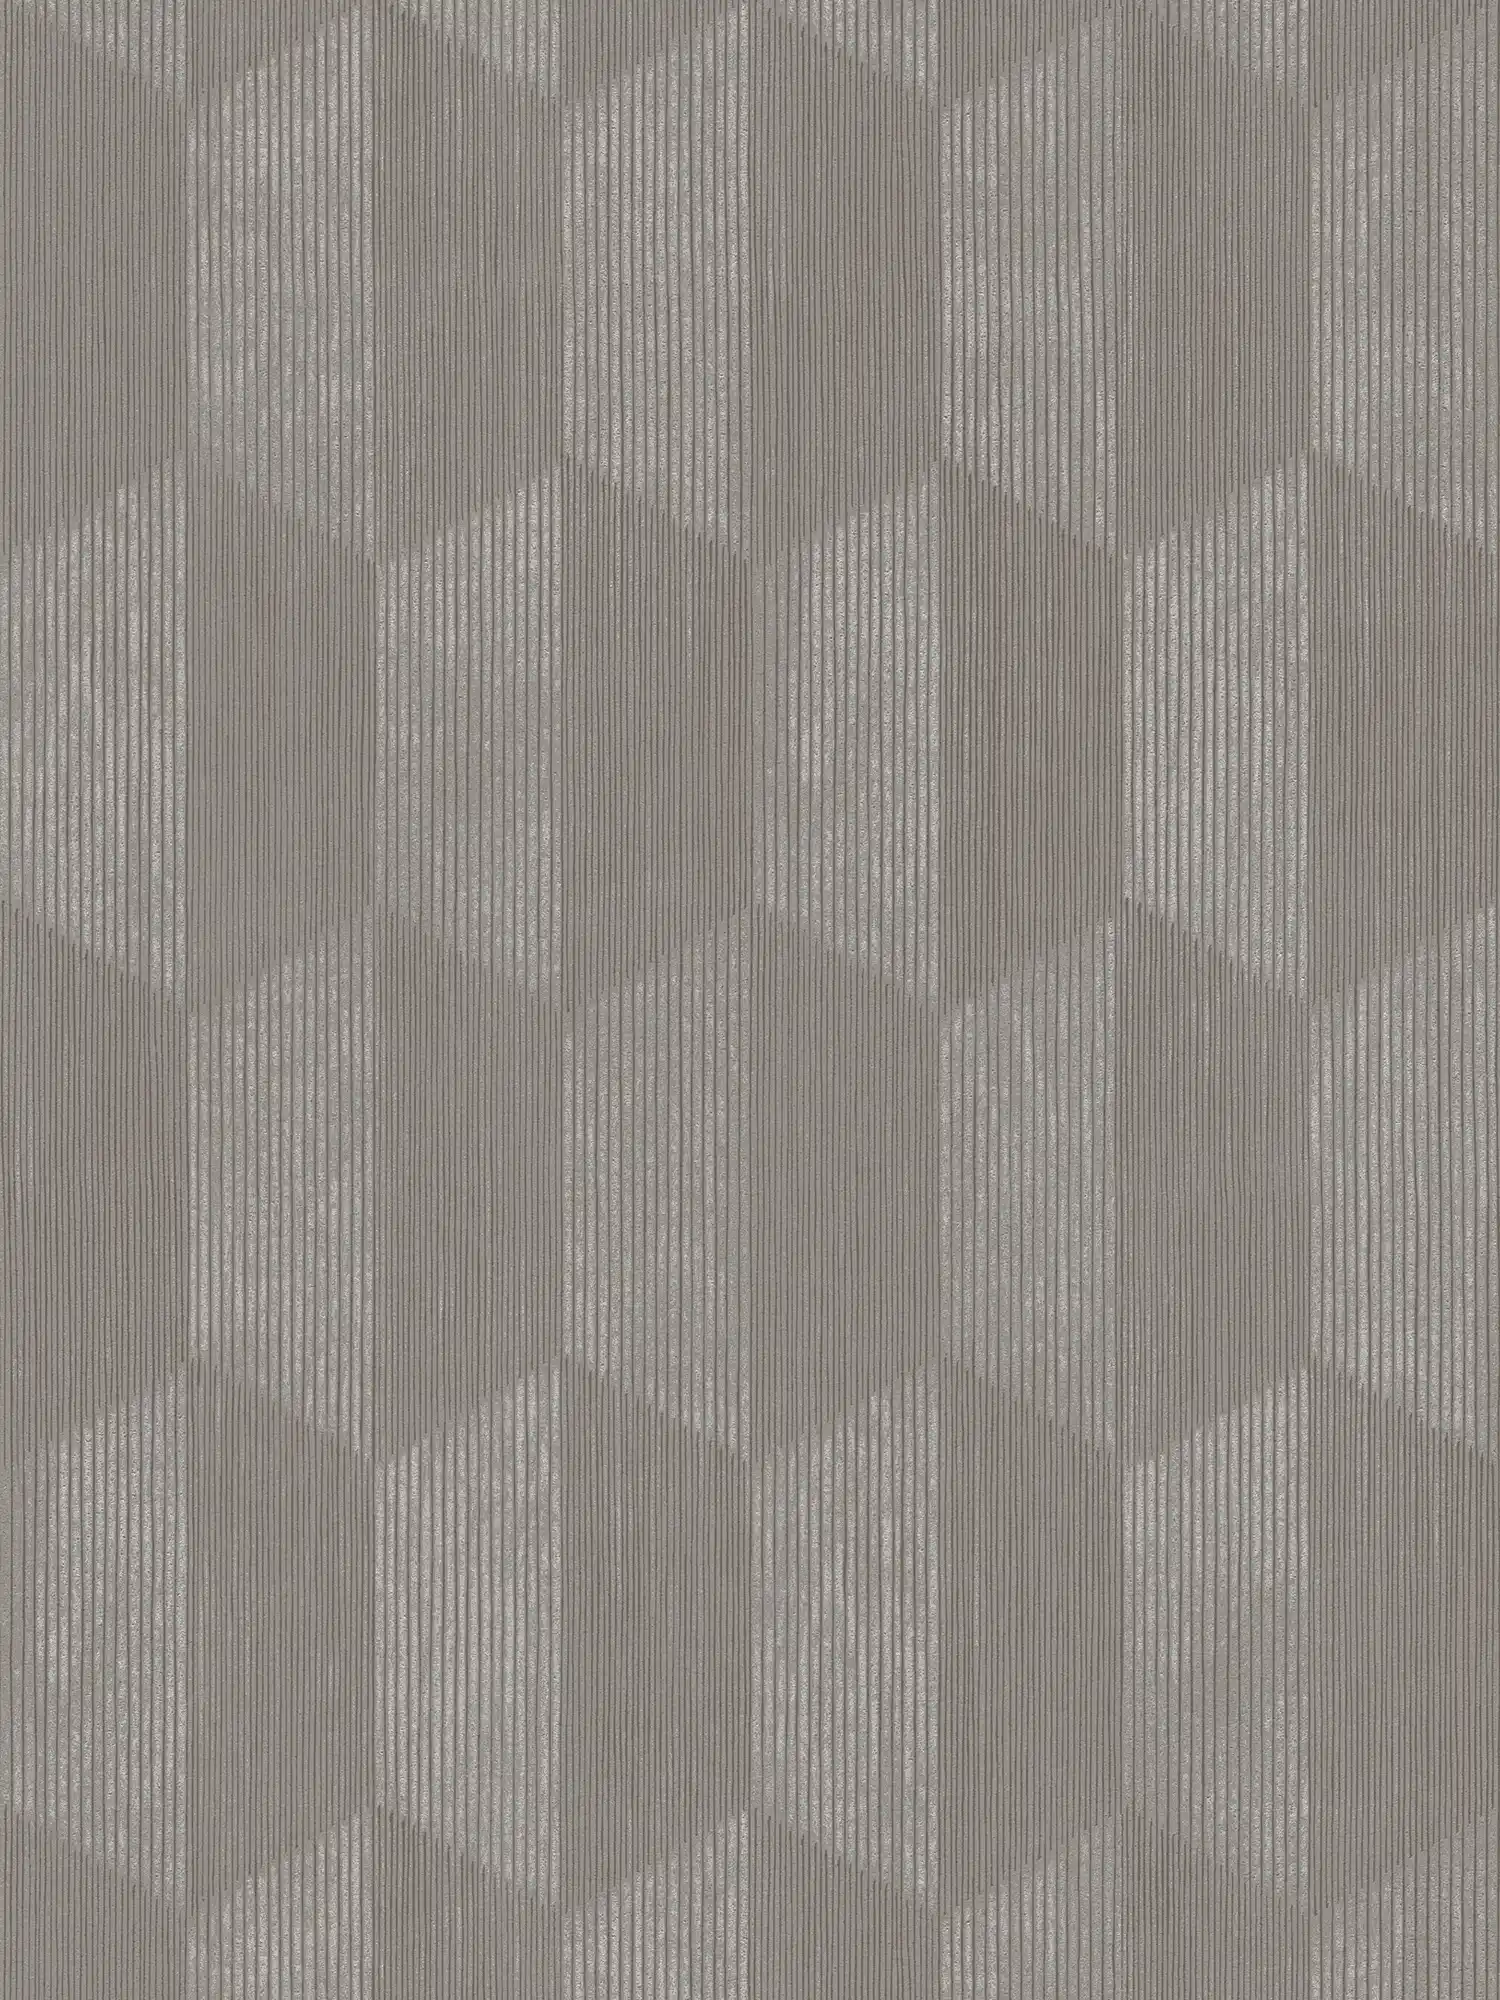 Papel pintado texturizado con patrón gráfico 3D - gris, beige
